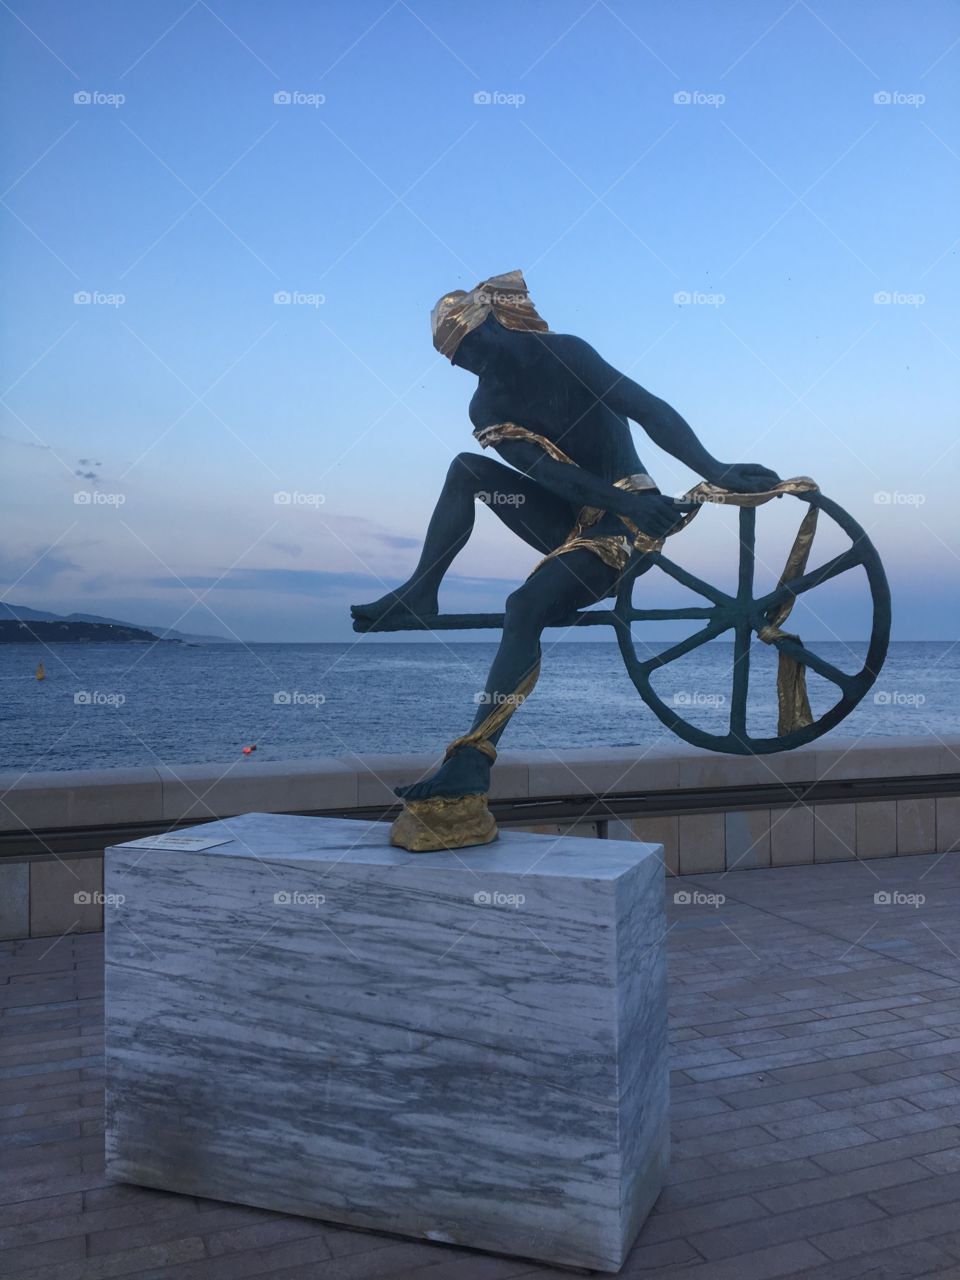 Sea statue in Monaco port